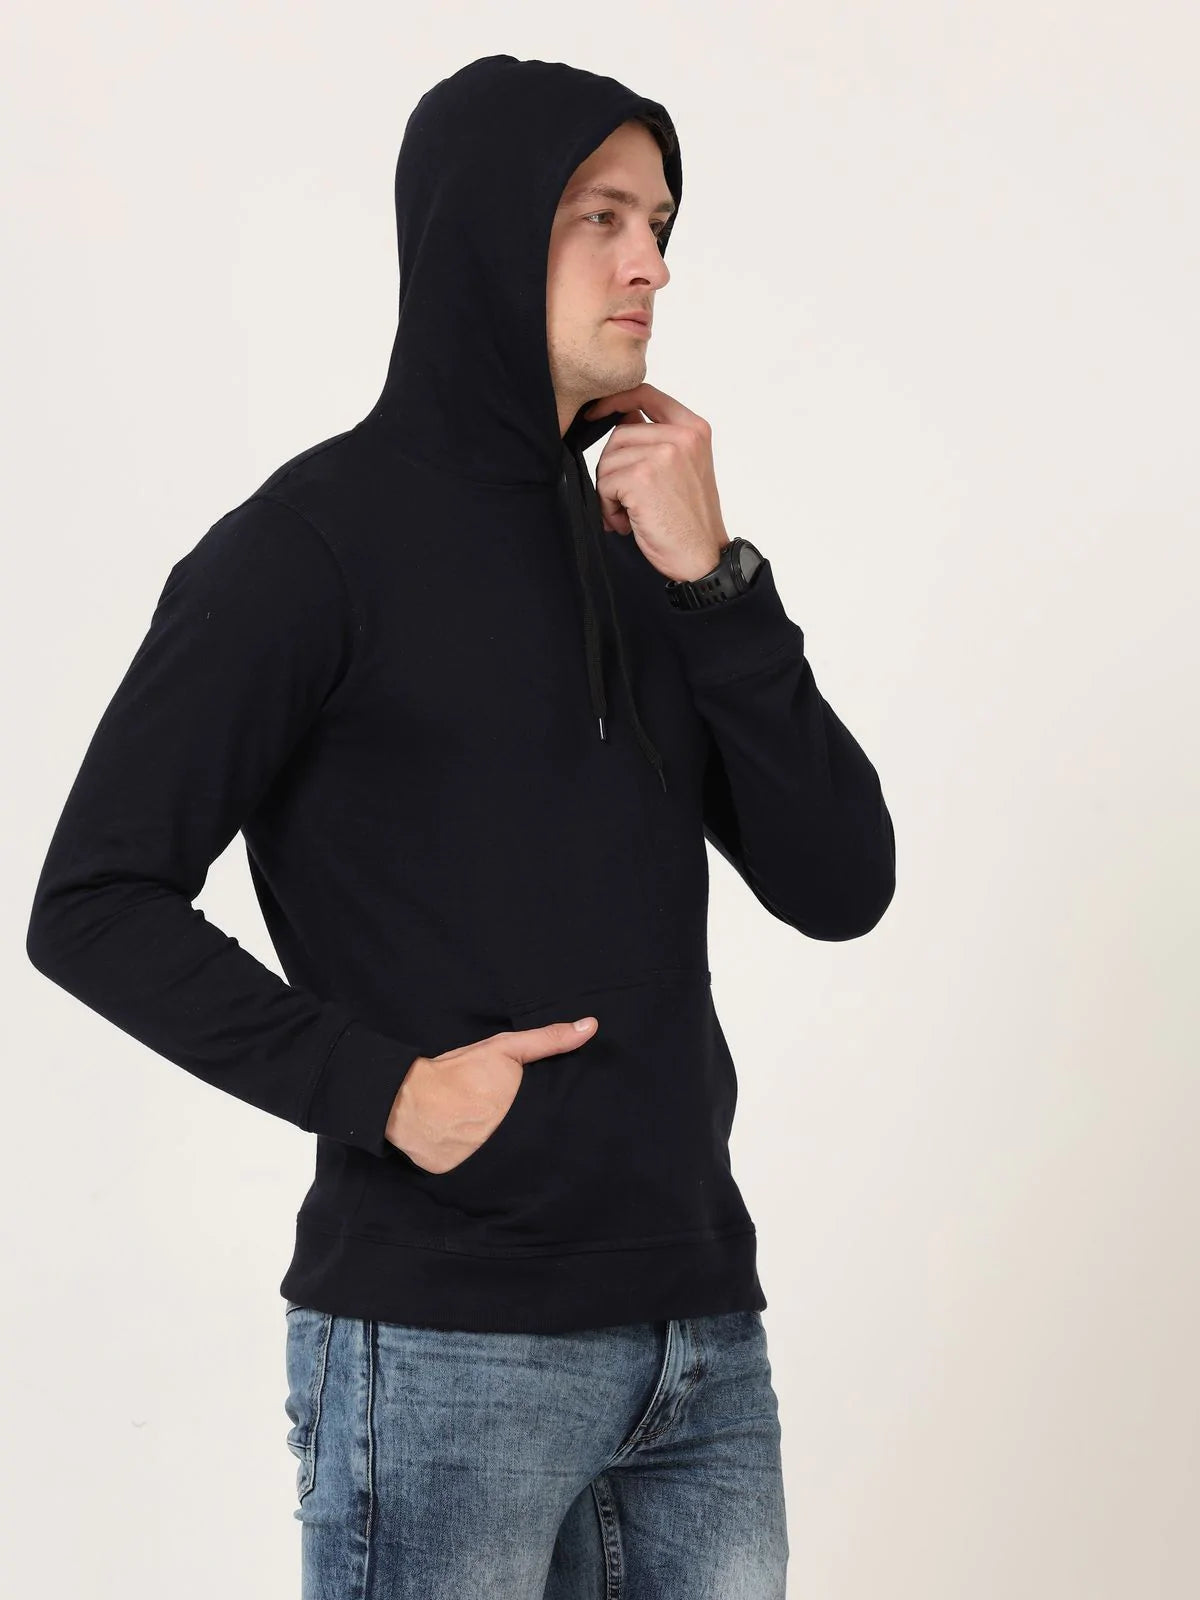 Fleximaa Men's Cotton Hooded Neck Plain Sweatshirt/Hoodies